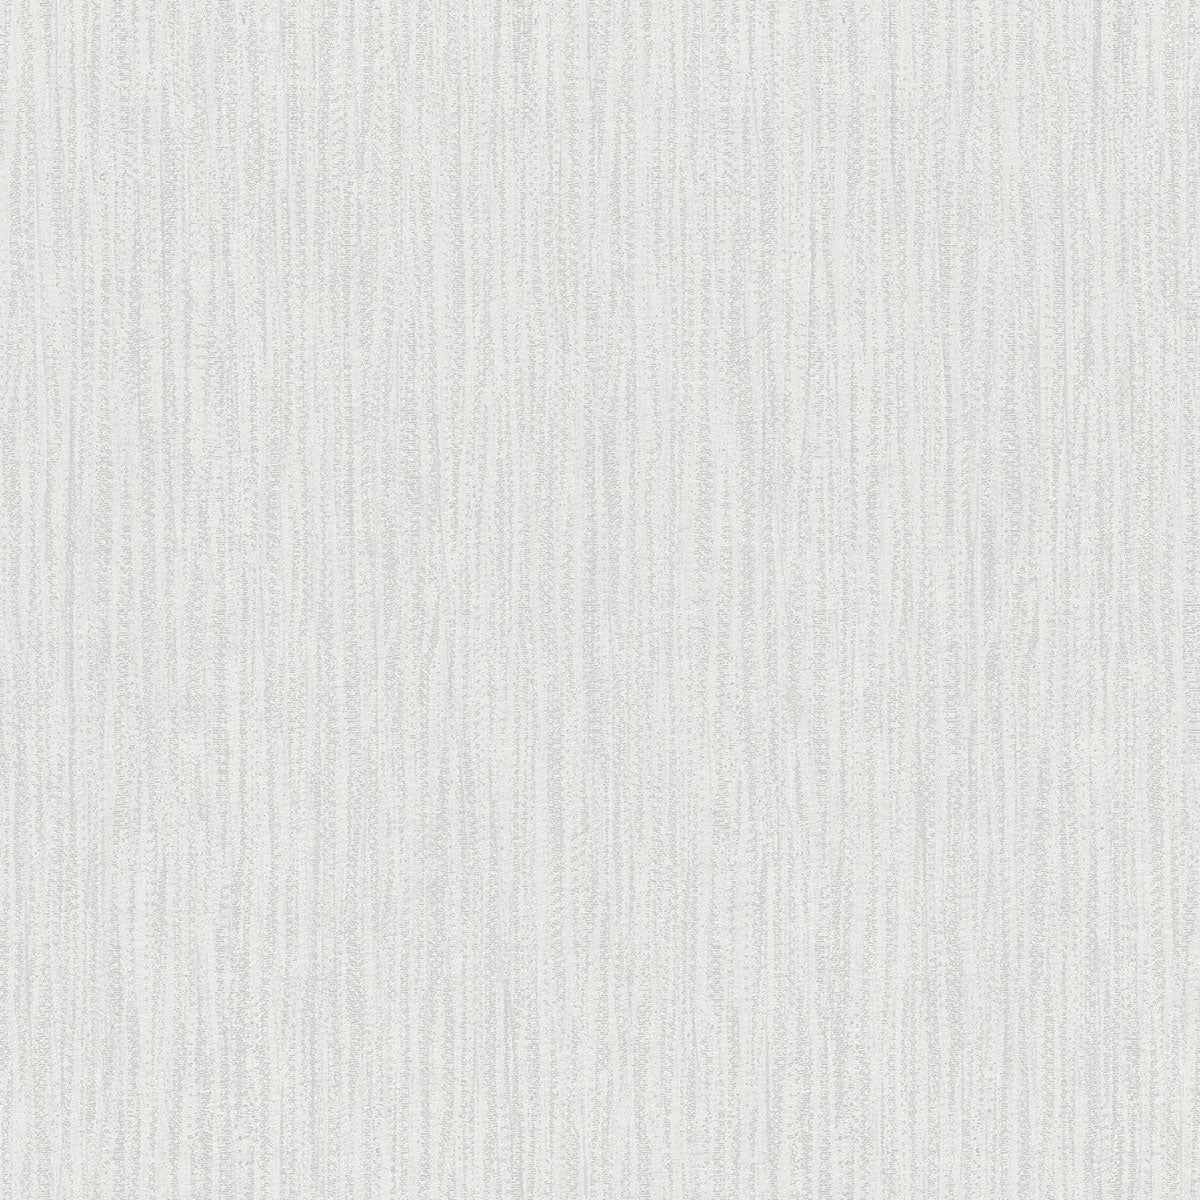 Gå rundt reaktion Deqenereret Shop Sample Abel Light Grey Textured Wallpaper from the Radiance Collection  | Burke Decor